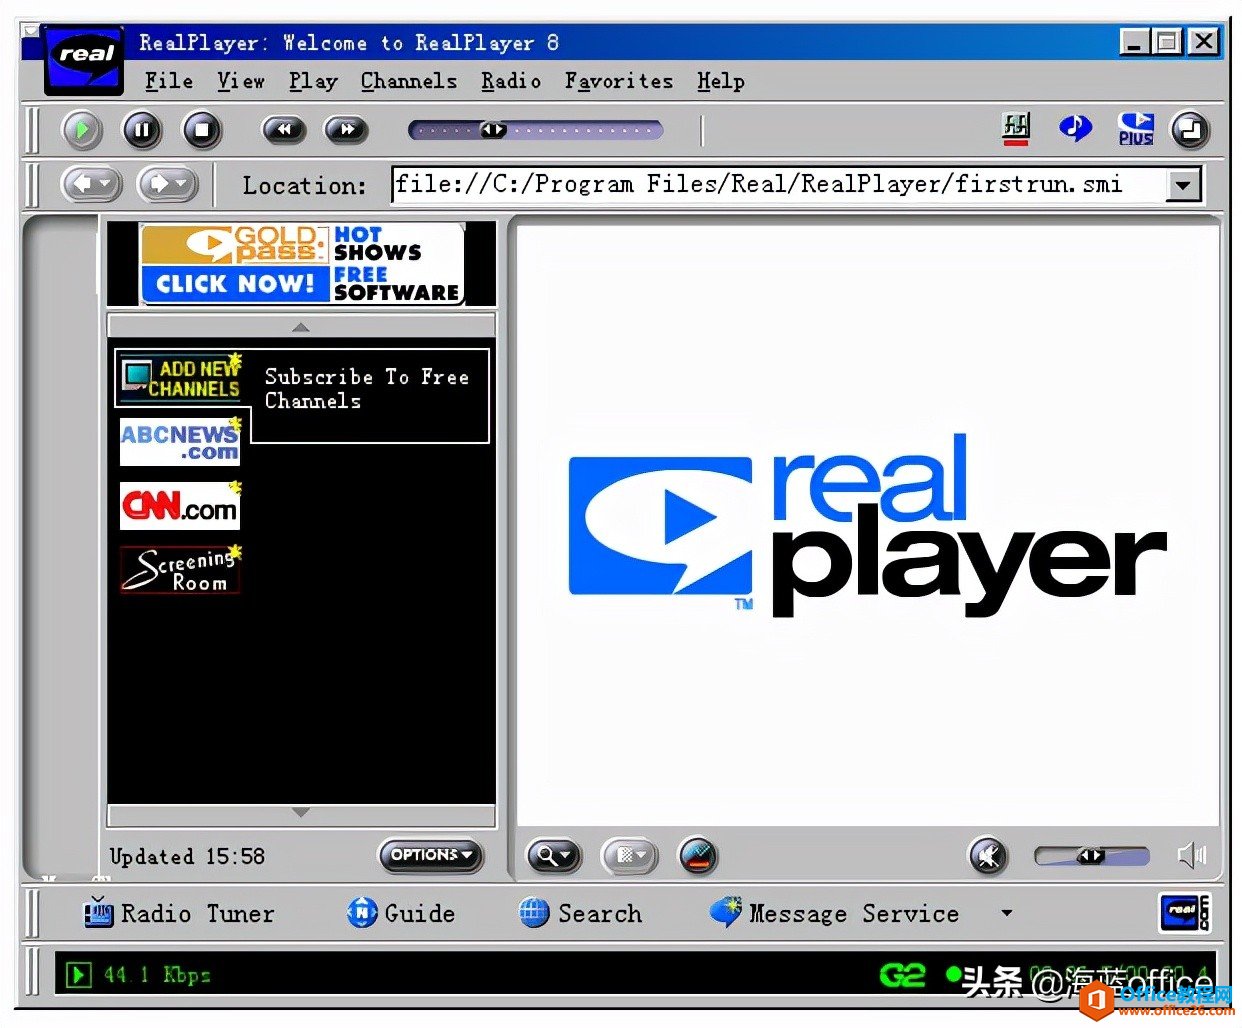 千千静听、RealPlayer、Winamp，回顾那些令人难忘的播放软件